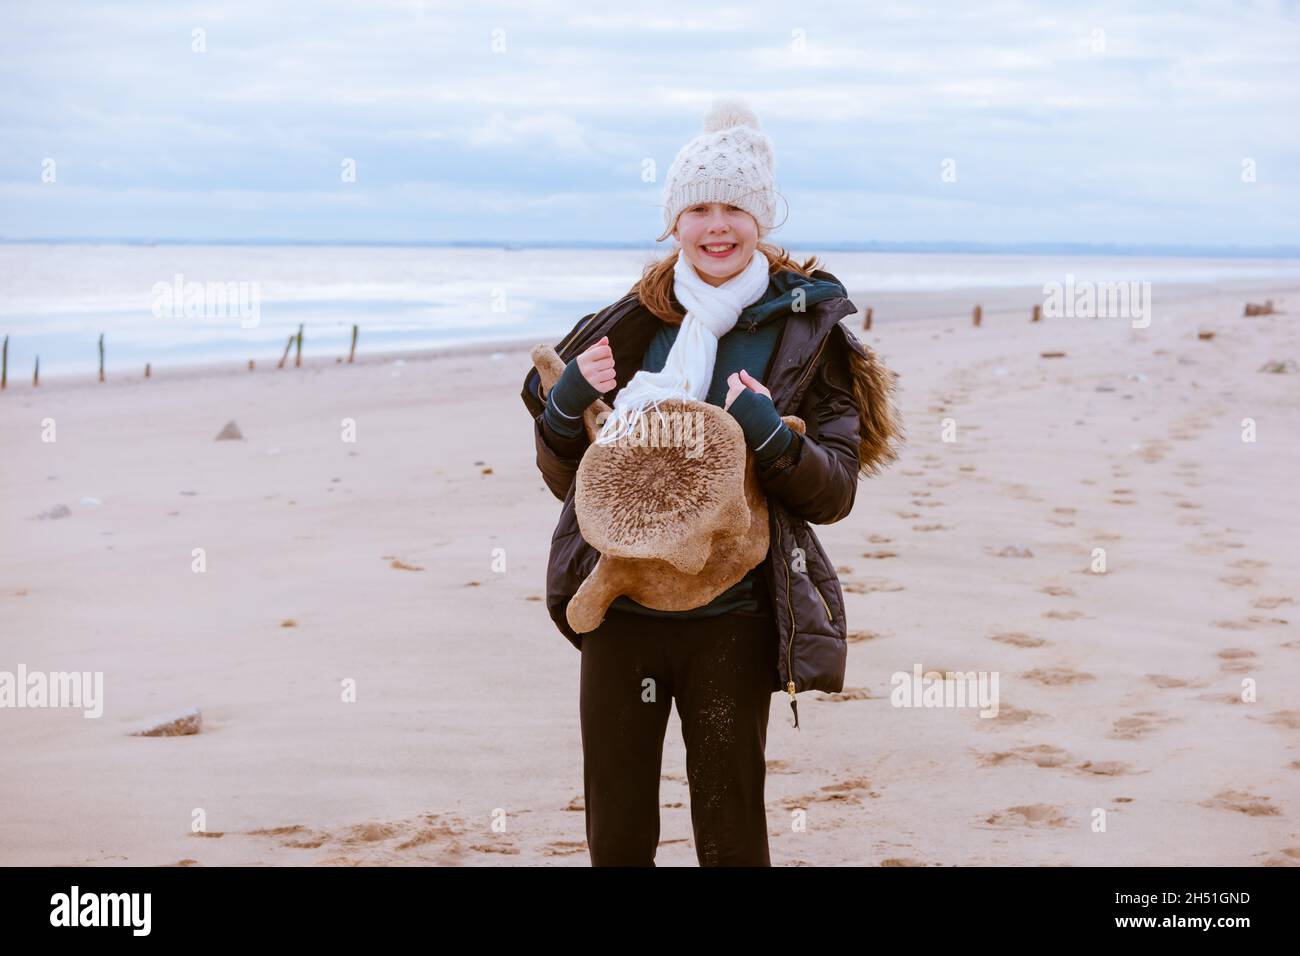 Une jeune adolescente sur une promenade à la plage explorant la nature et tenant une vertèbre de baleine Banque D'Images